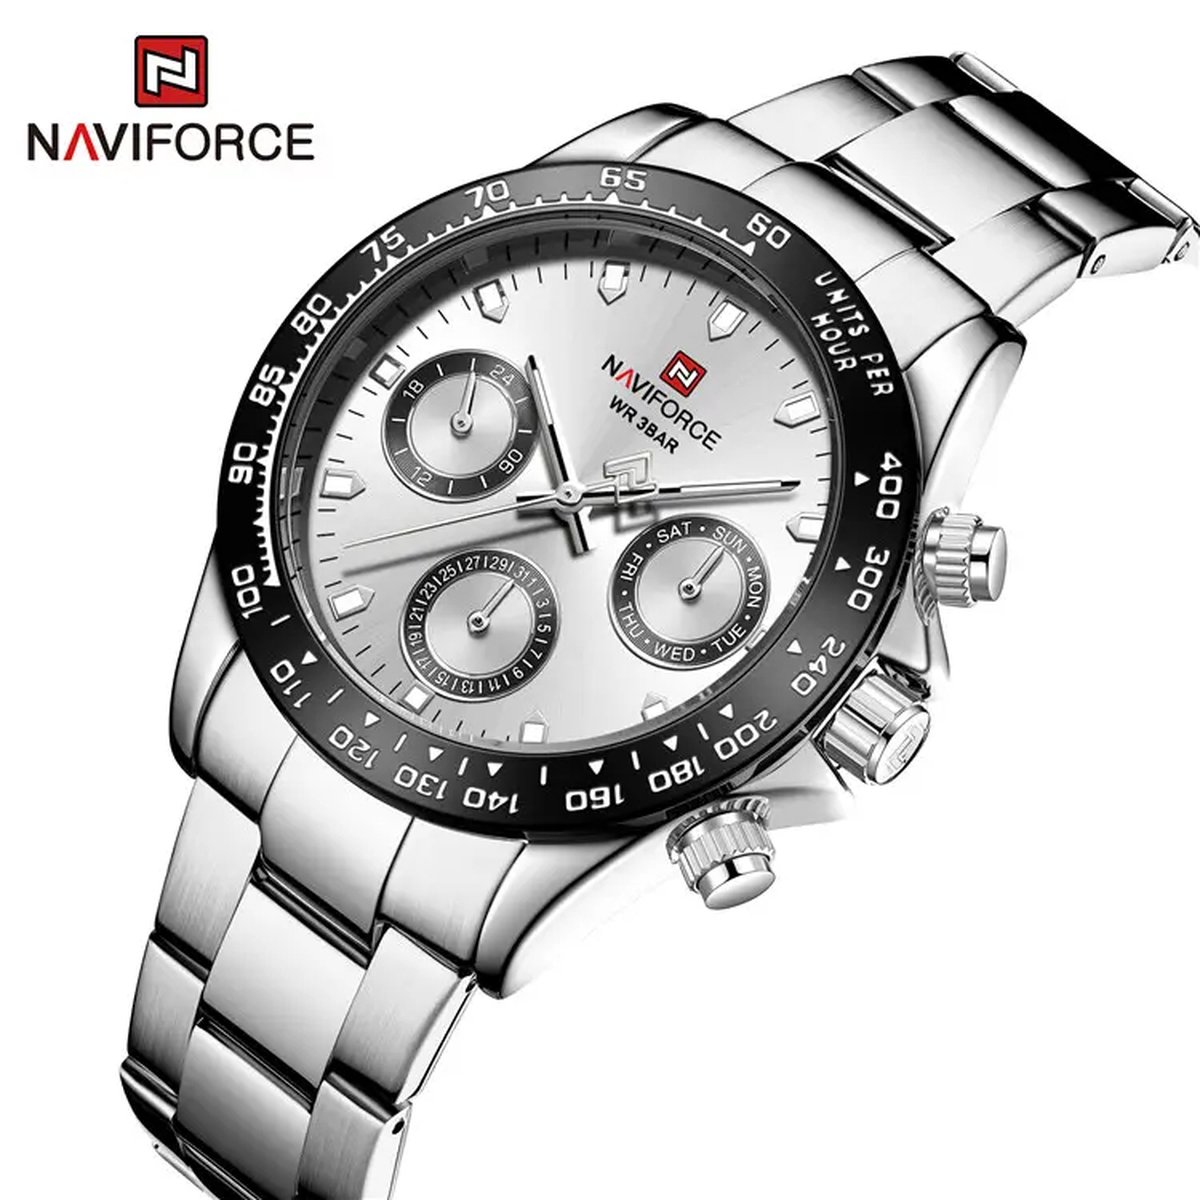 NAVIFORCE horloge voor mannen, met zilveren metalen polsband, zwarte uurwerkkast en witte wijzerplaat ( model 9193 SBW ), verpakt in mooie geschenkdoos